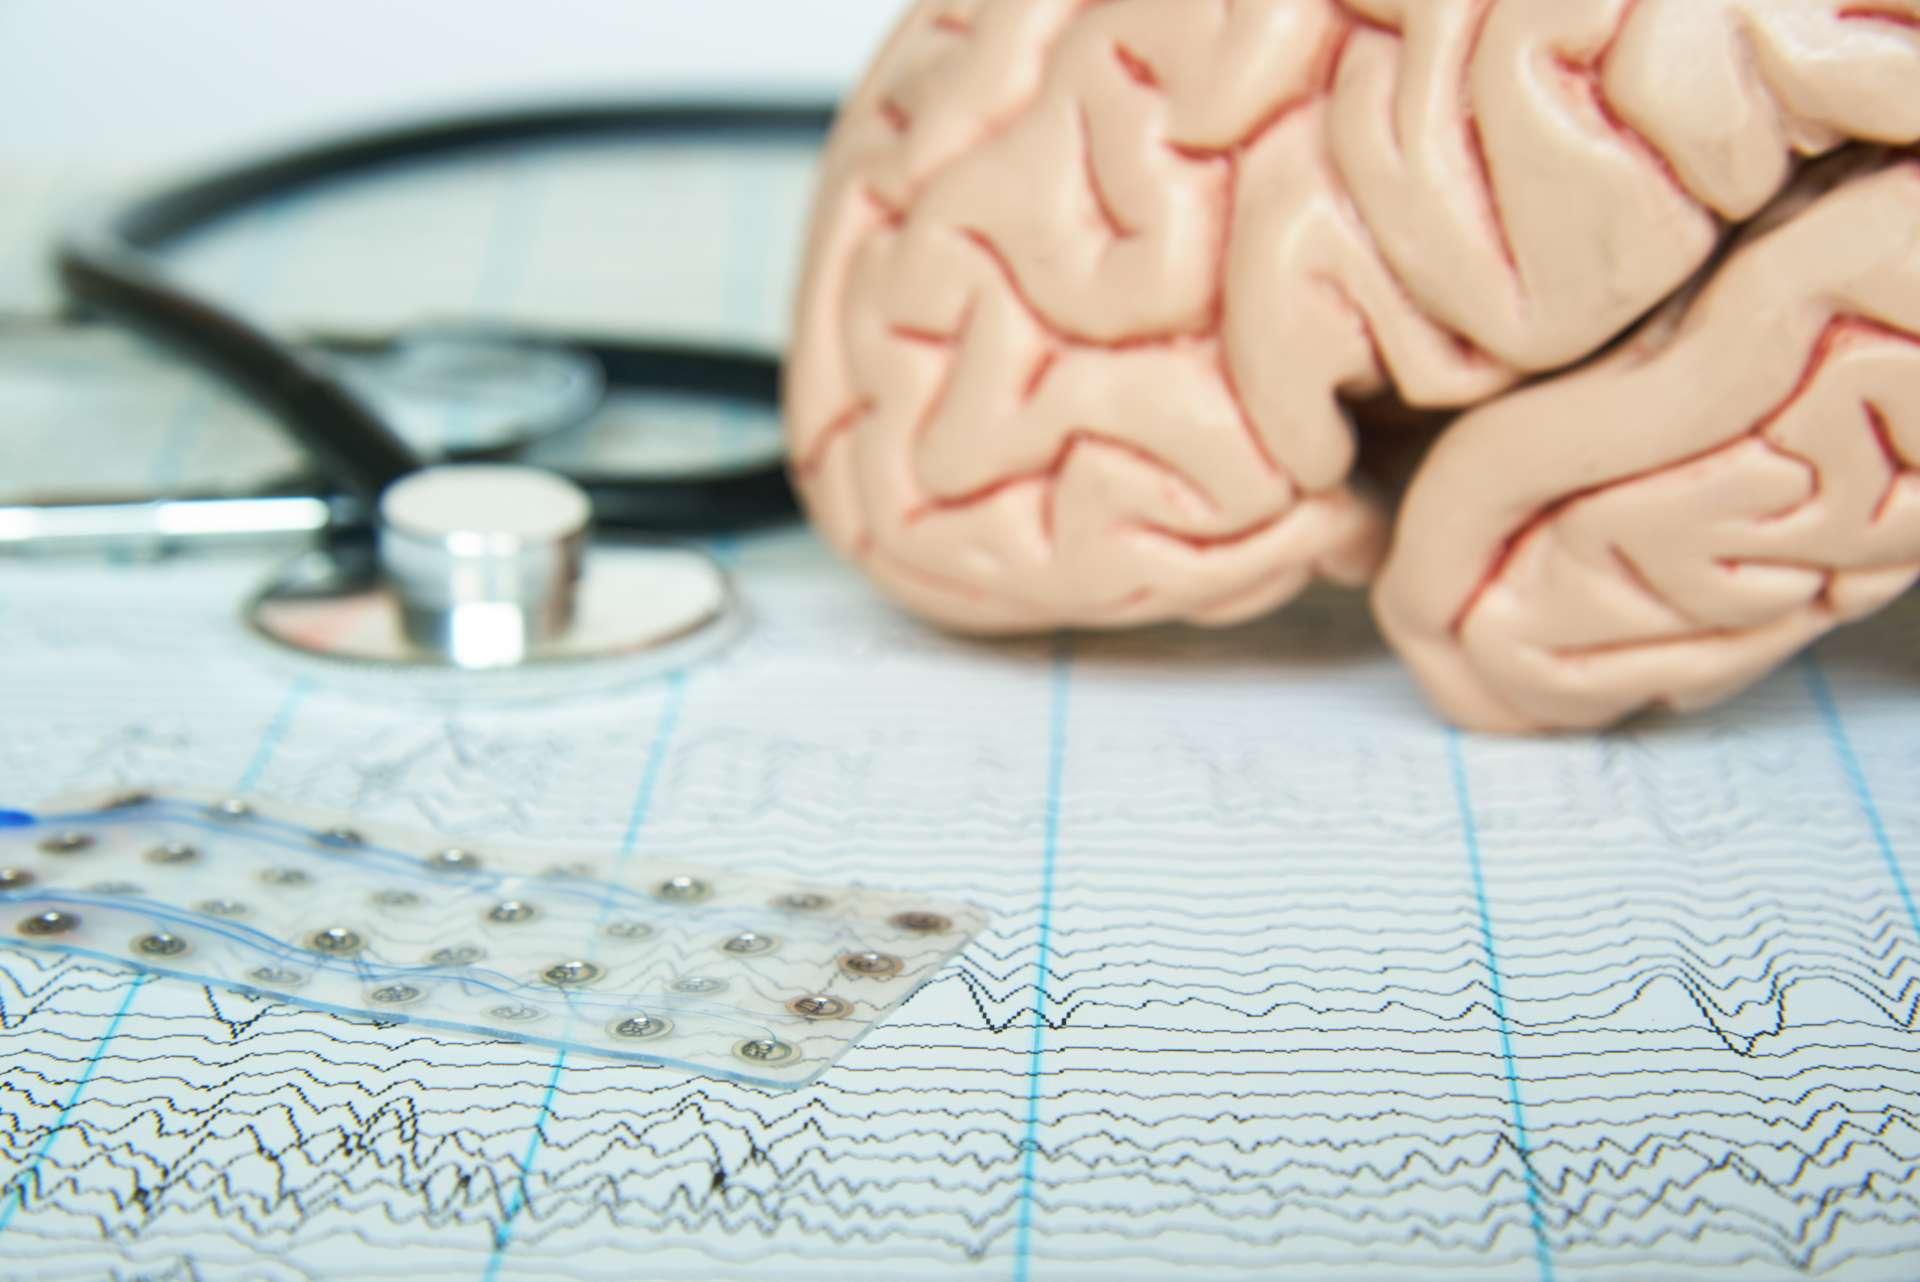 Subdurales Elektrodengitter auf Elektroenzephalographiepapier. Menschliches Gehirnmodell und ein schwarzes Stethoskop auf Hintergrund.